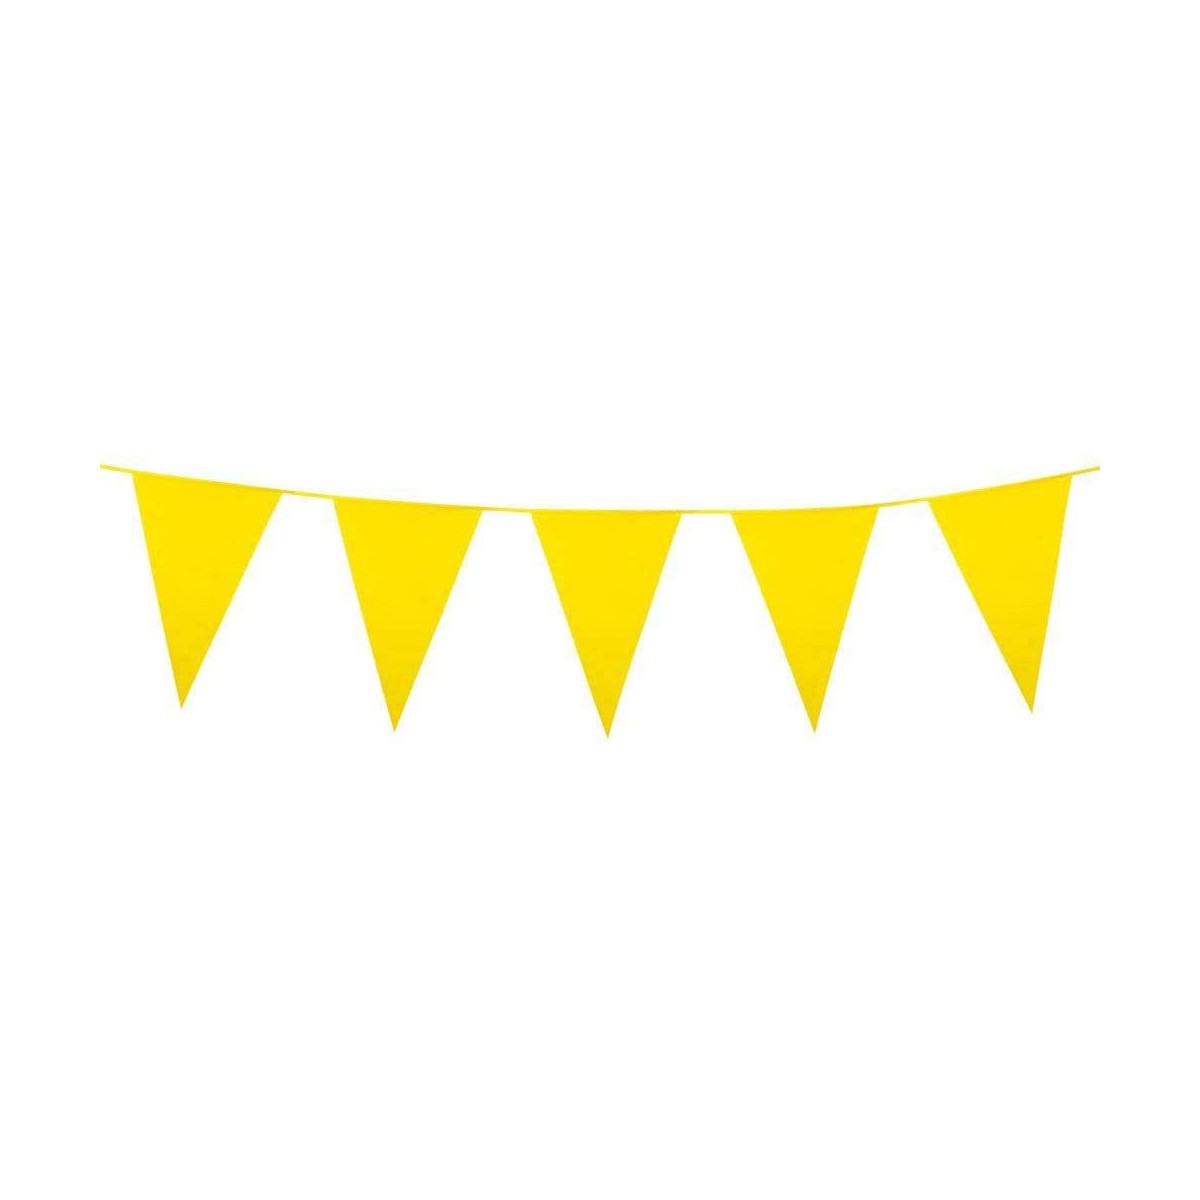 Festone bandierine gialle da 10 metri, accessorio feste e party